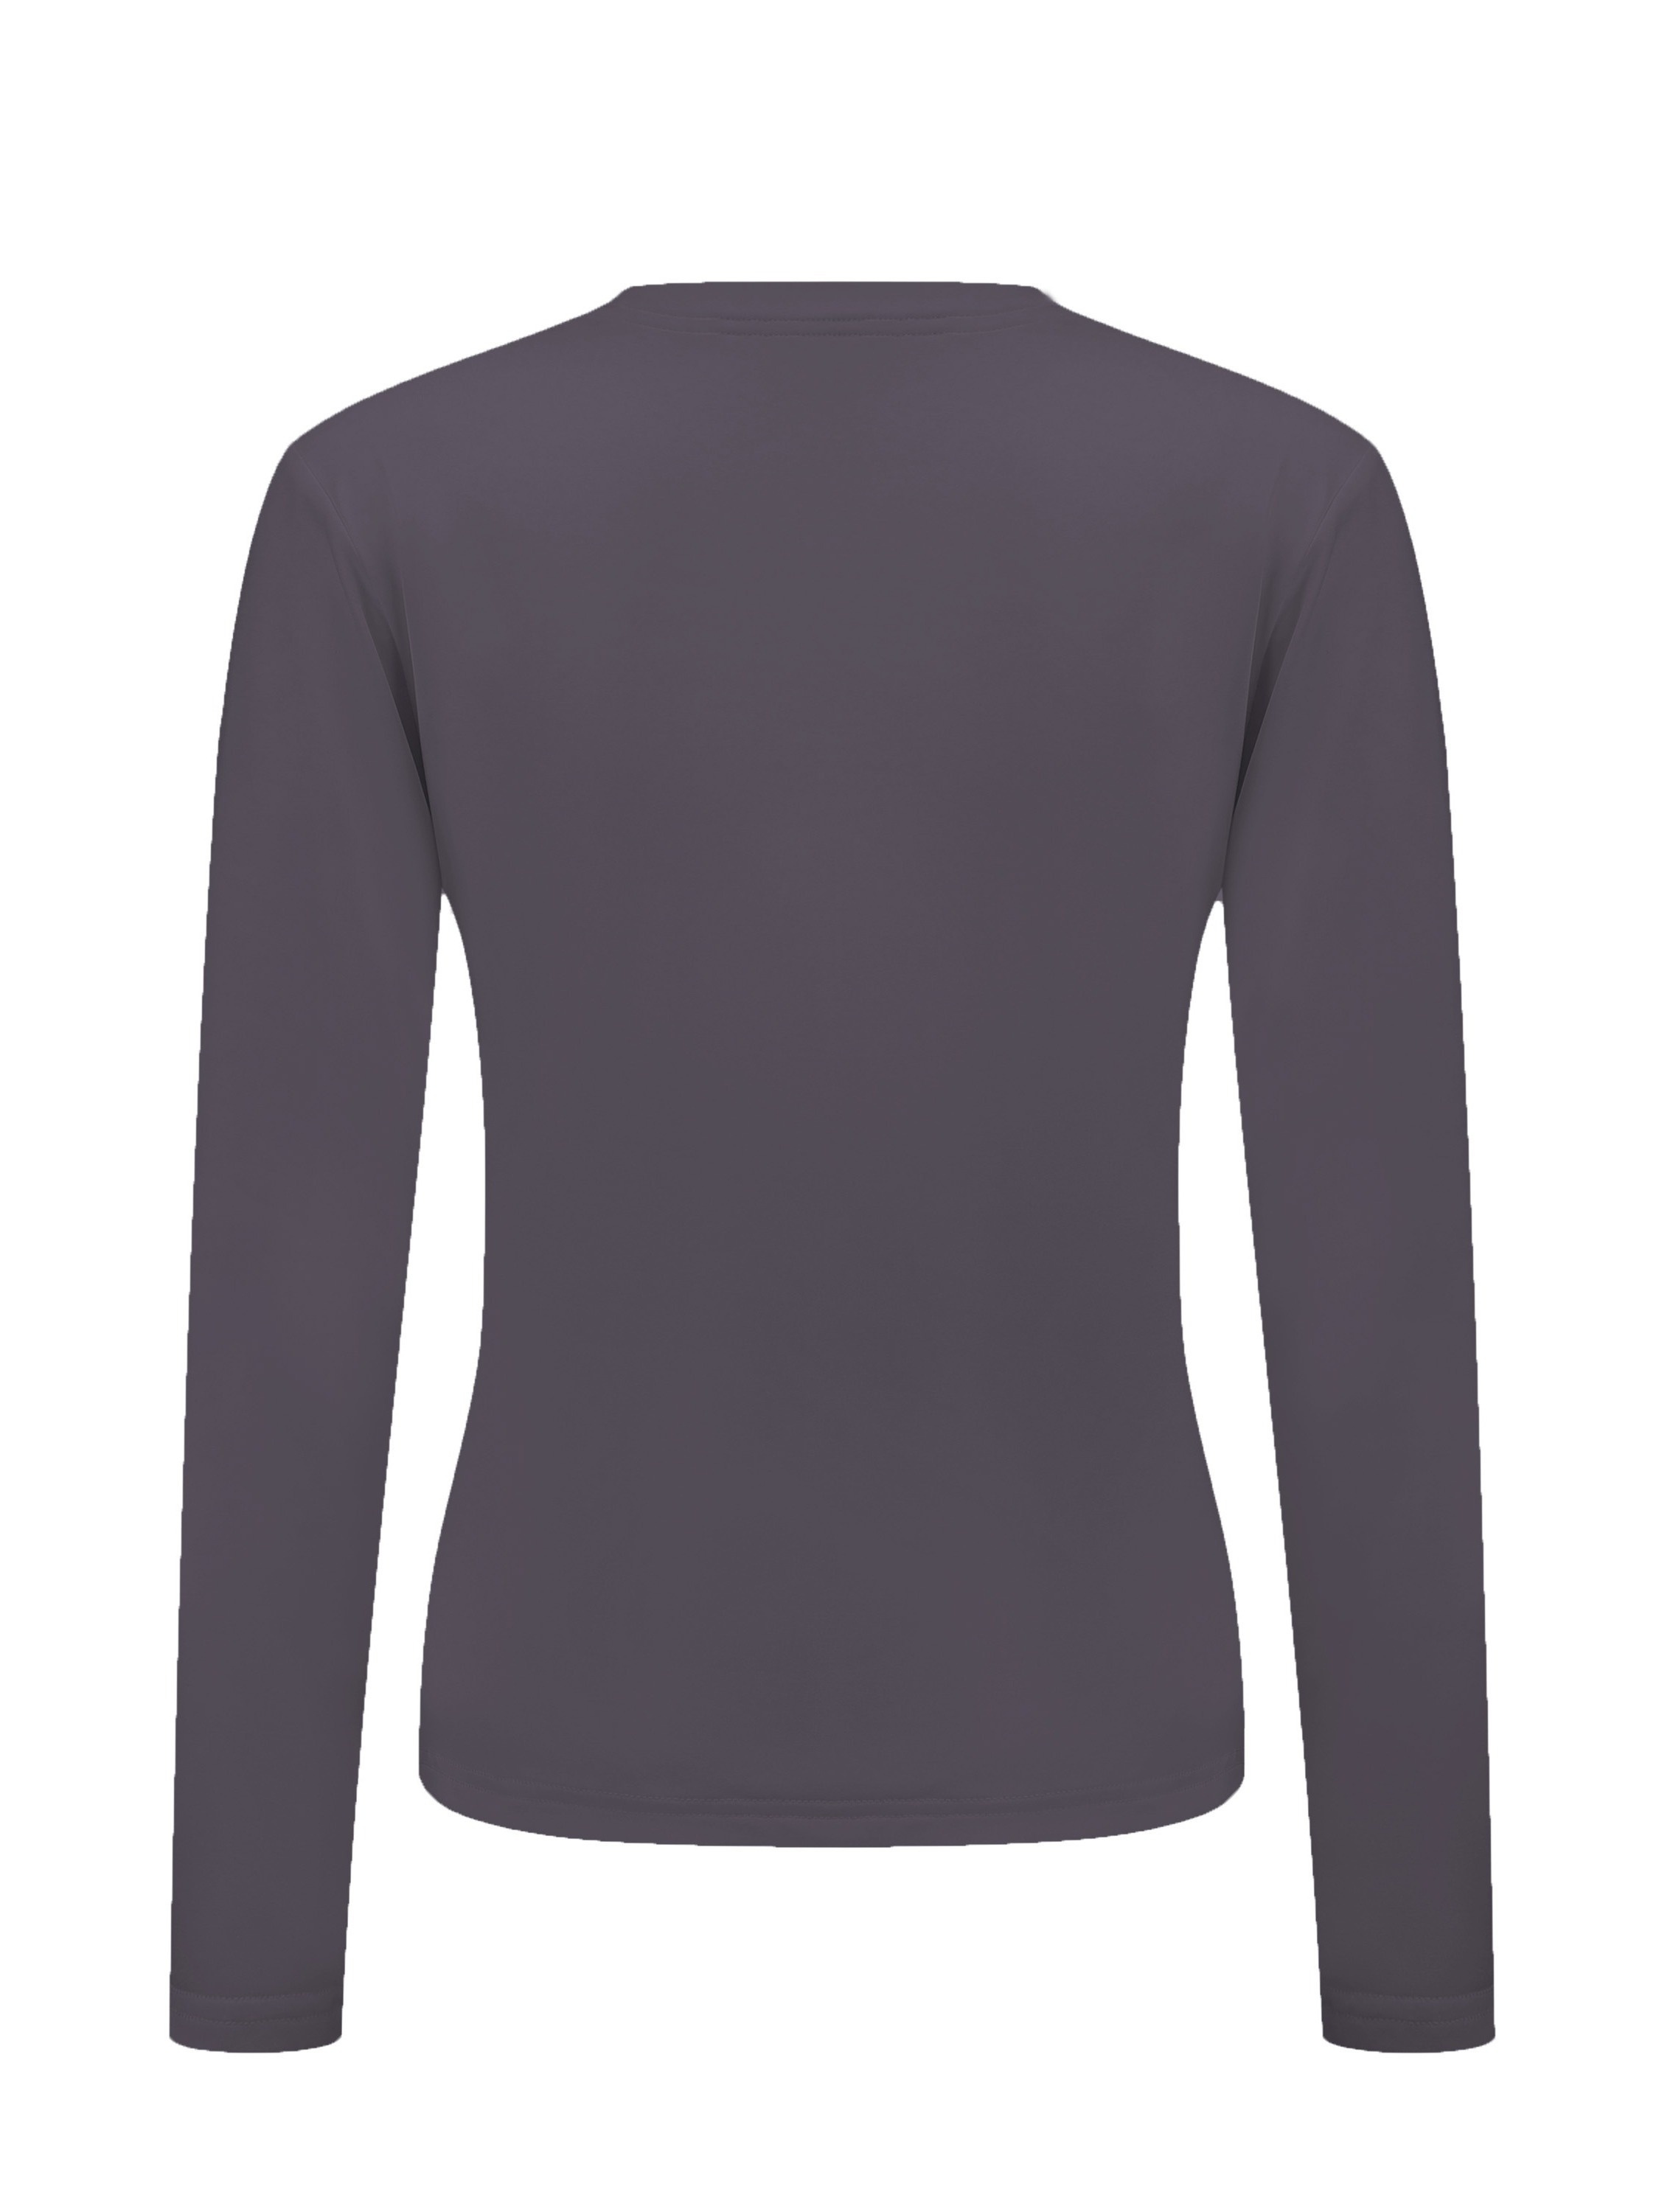 Camiseta térmica para mujer, para clima frío, ajustada, de manga larga,  cuello redondo, camiseta básica térmica para mujer